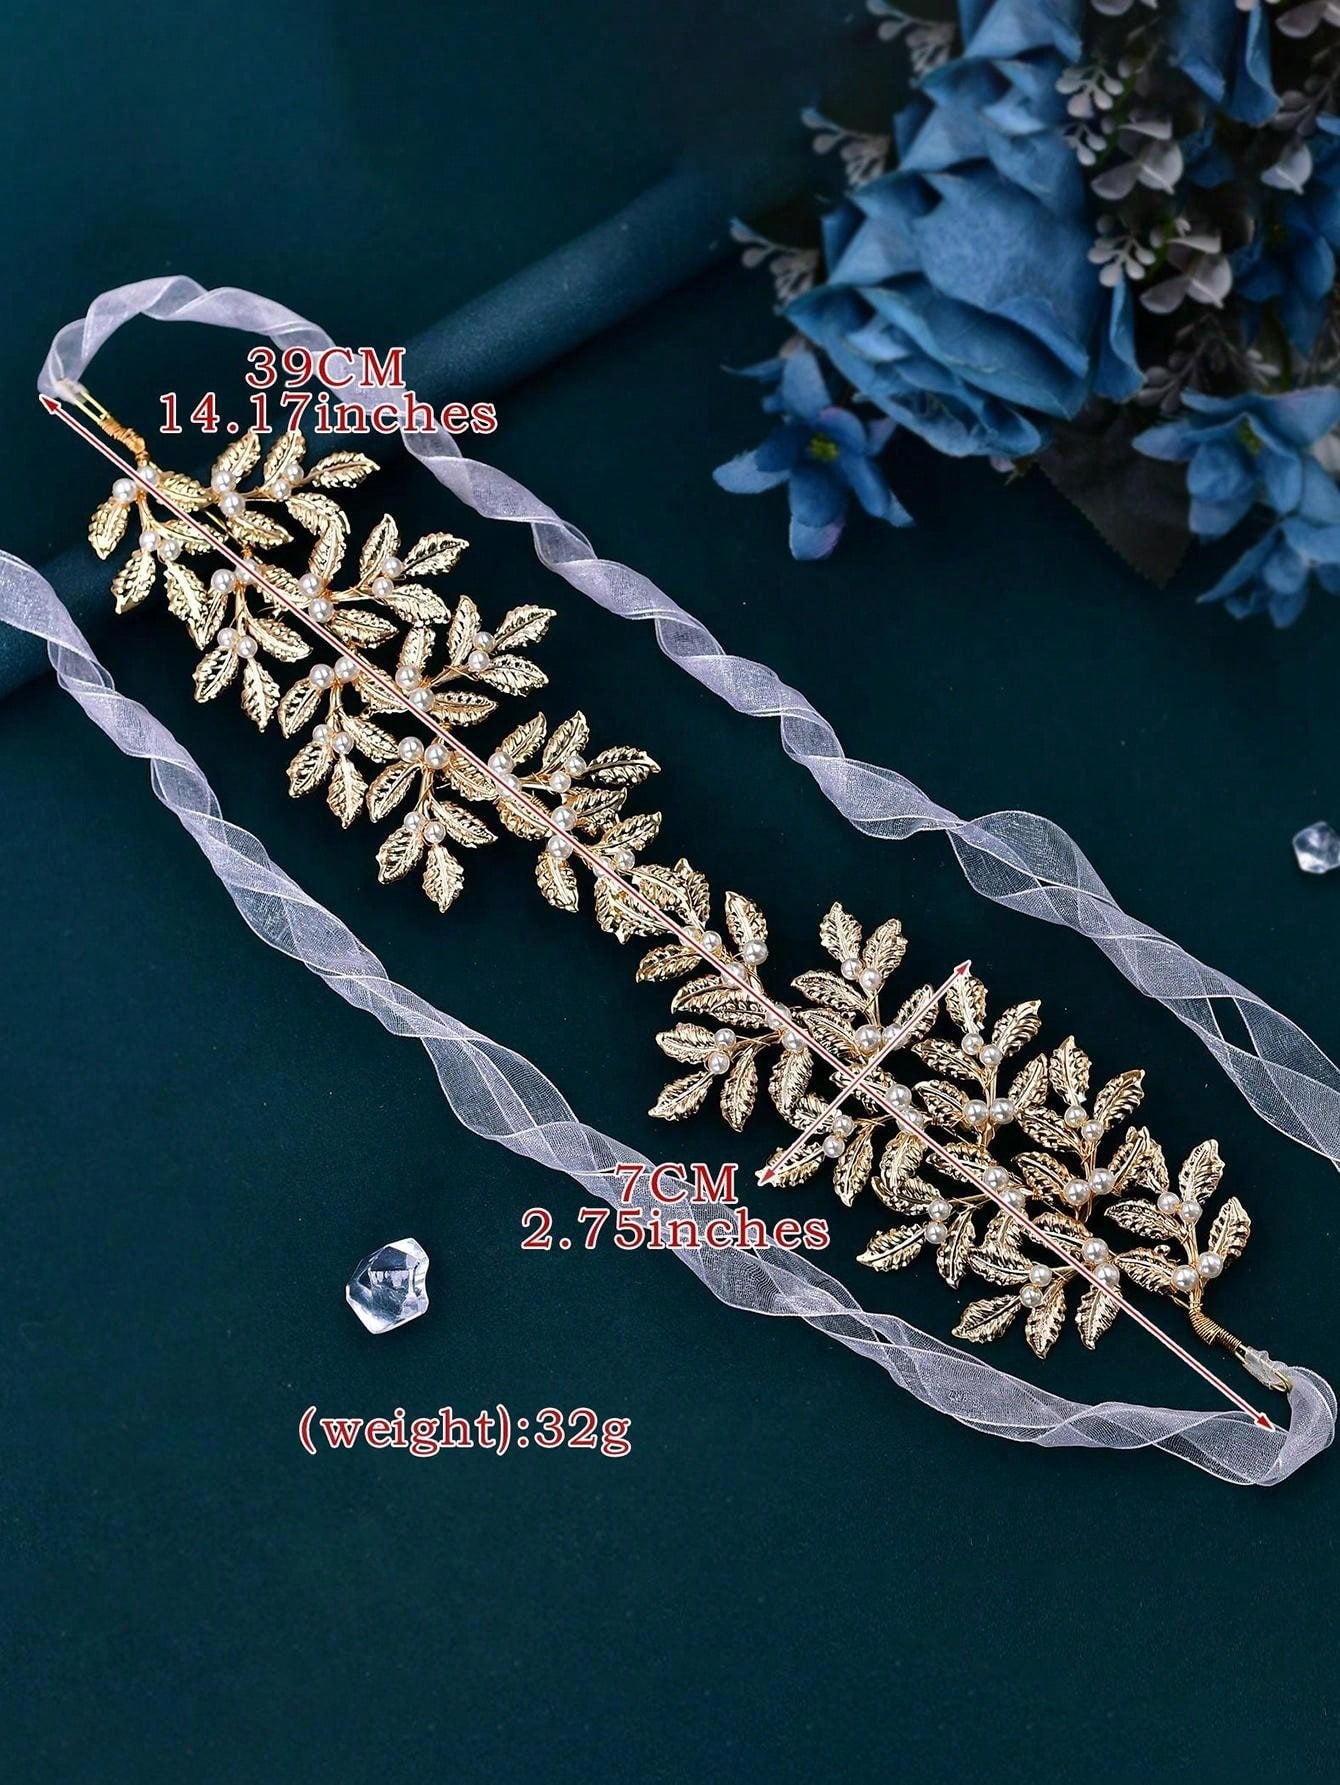 Elegant Handmade Headband, Gold Color Leaf Design